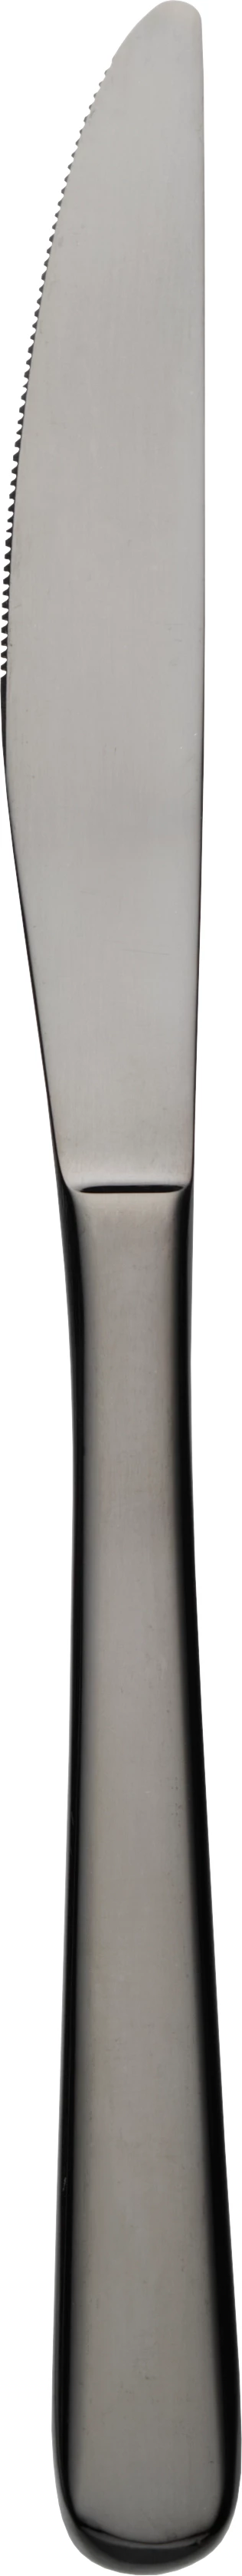 Navona frokostkniv, sort, 19,8 cm